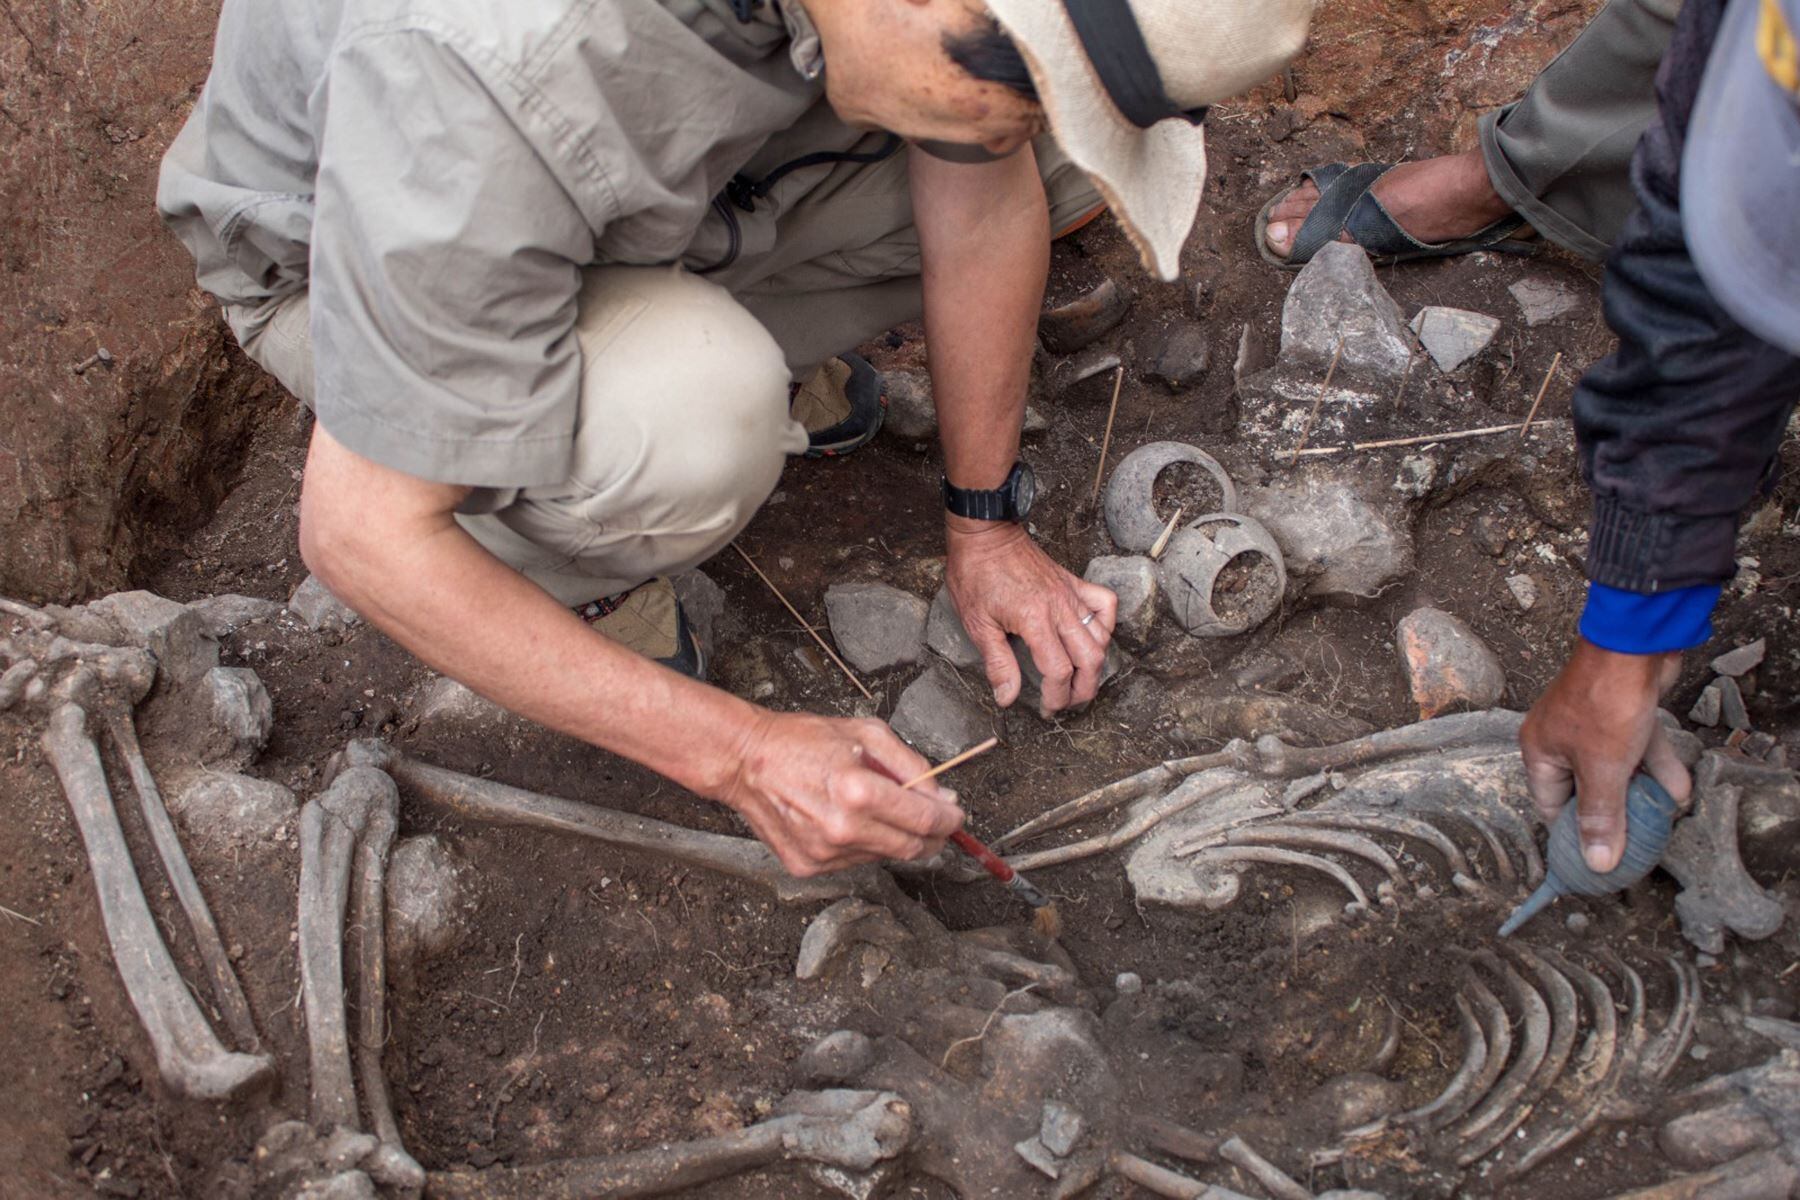 Arqueólogos en Cajamarca hallan la tumba del 'Sacerdote de Pacopampa' - Perú - Crédito: Agencia Andina.